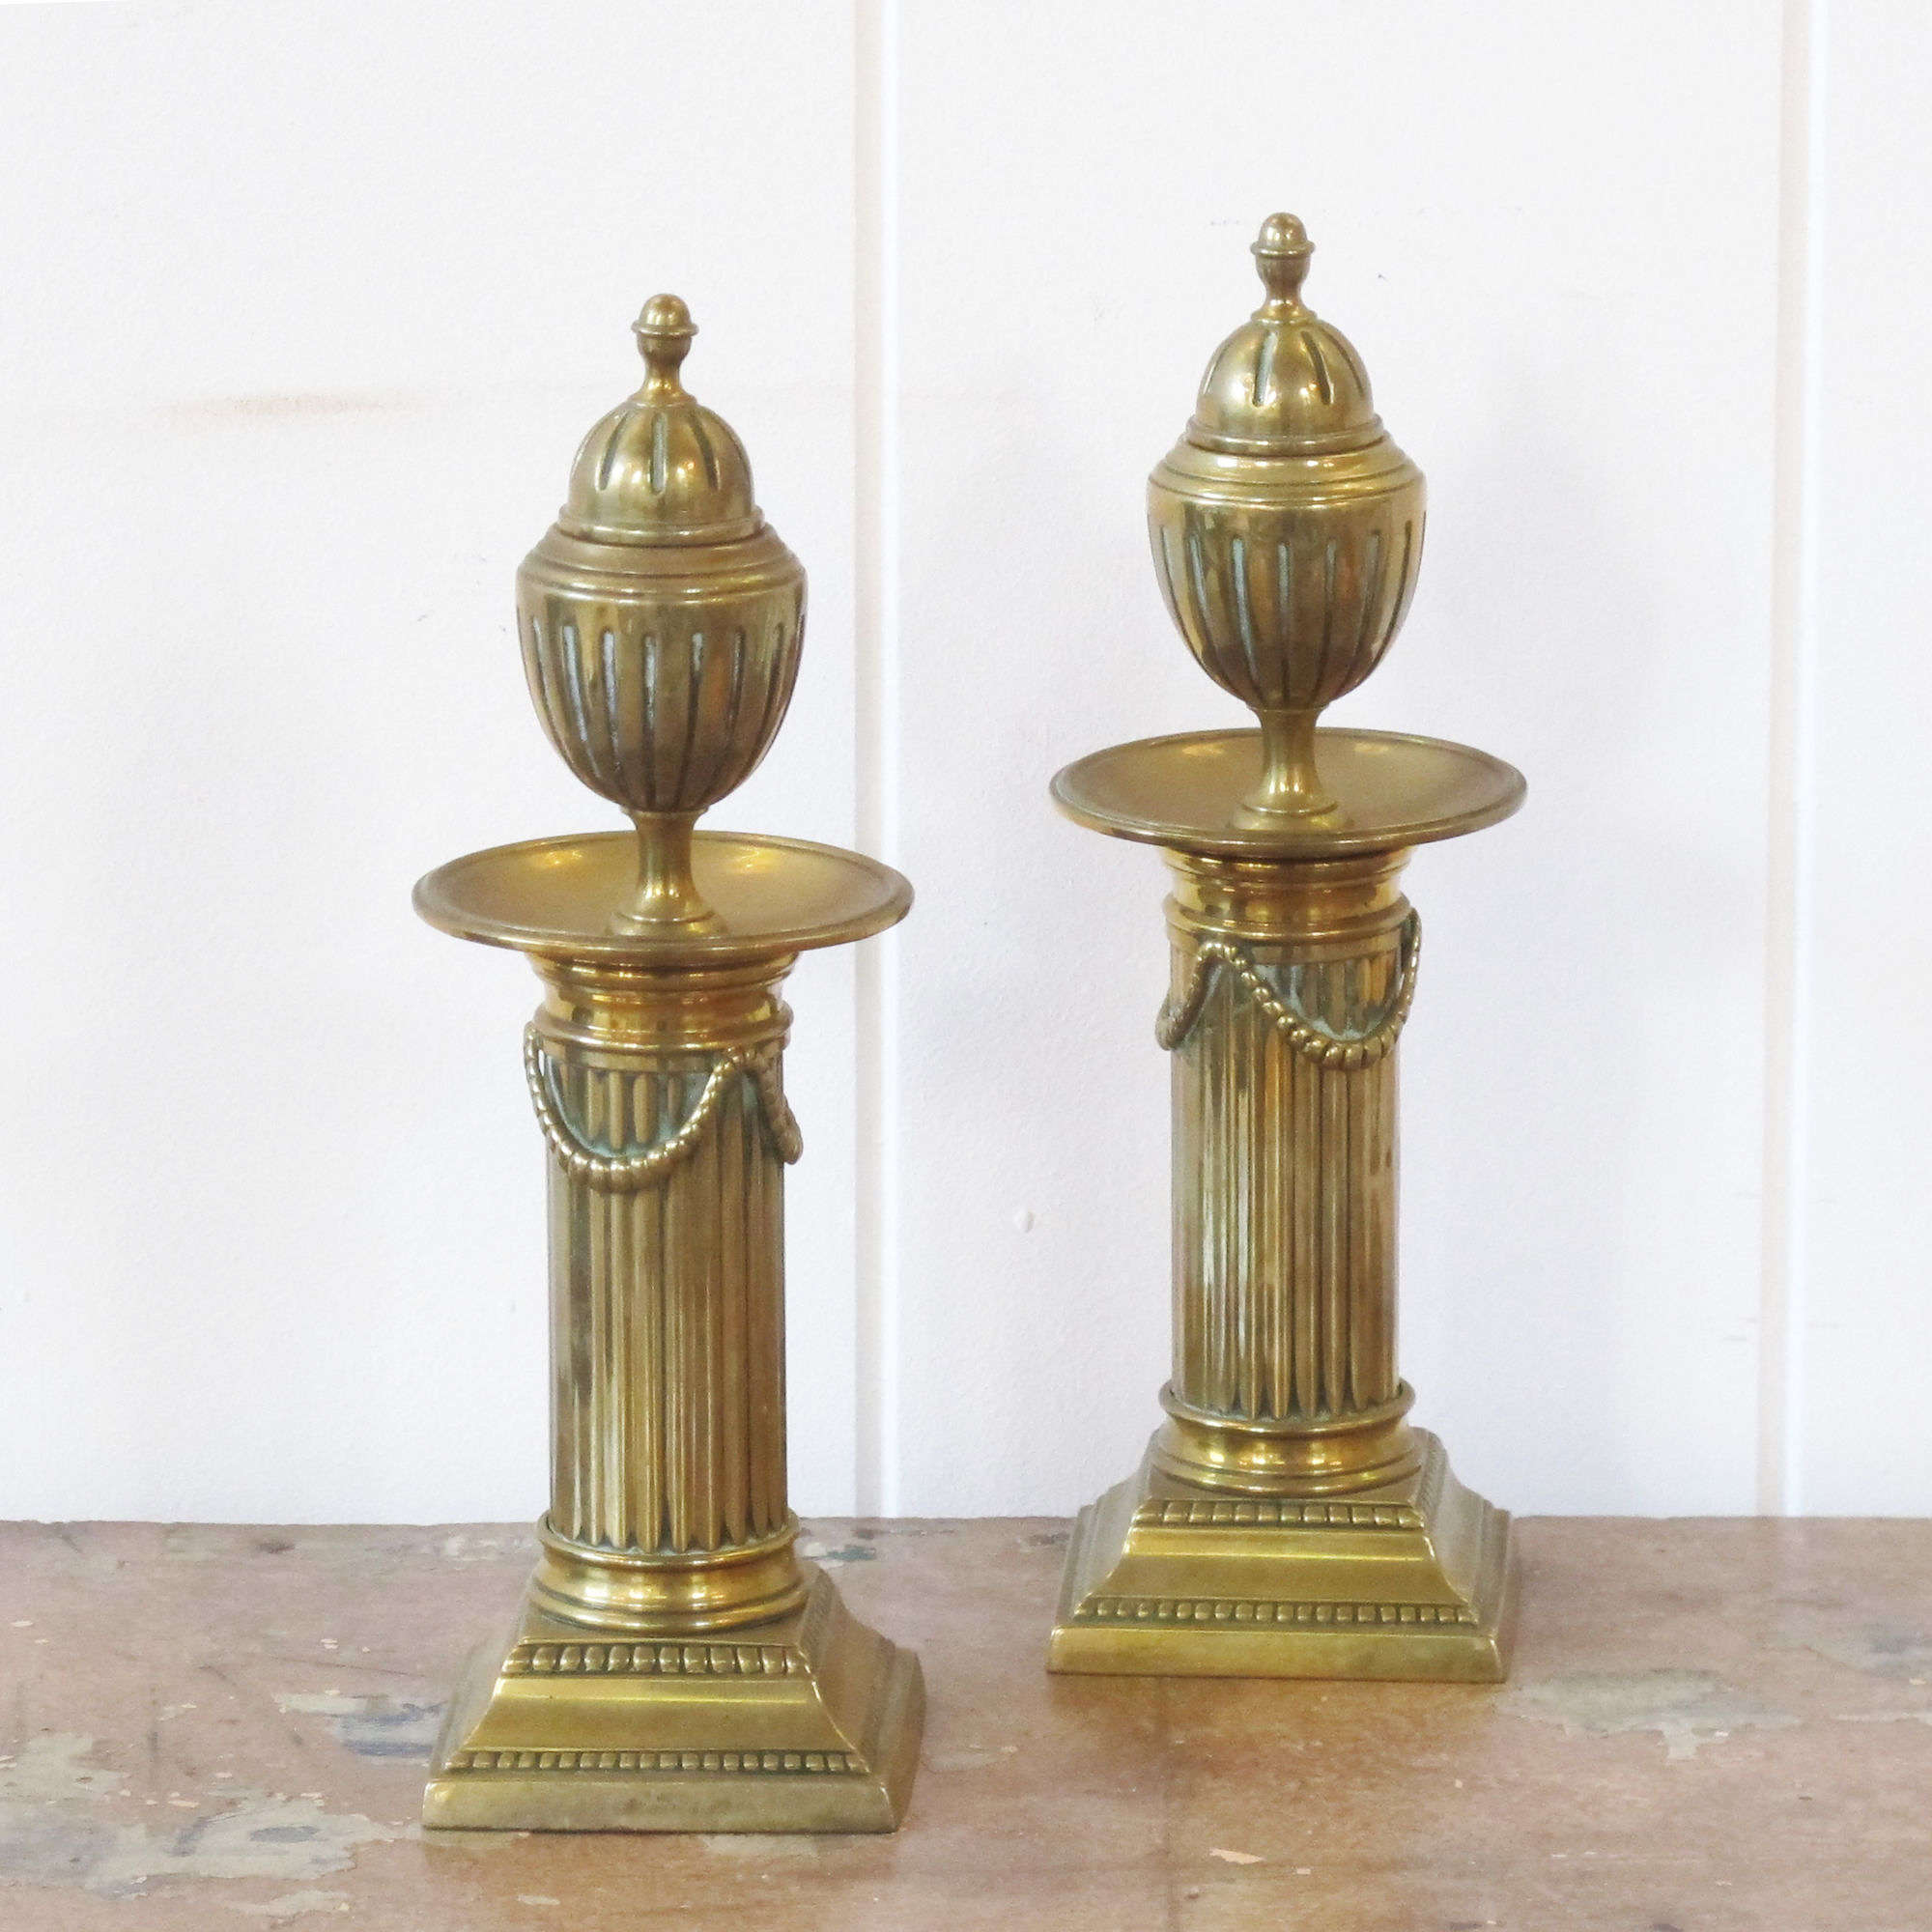 Decorative pair of brass column candlesticks.